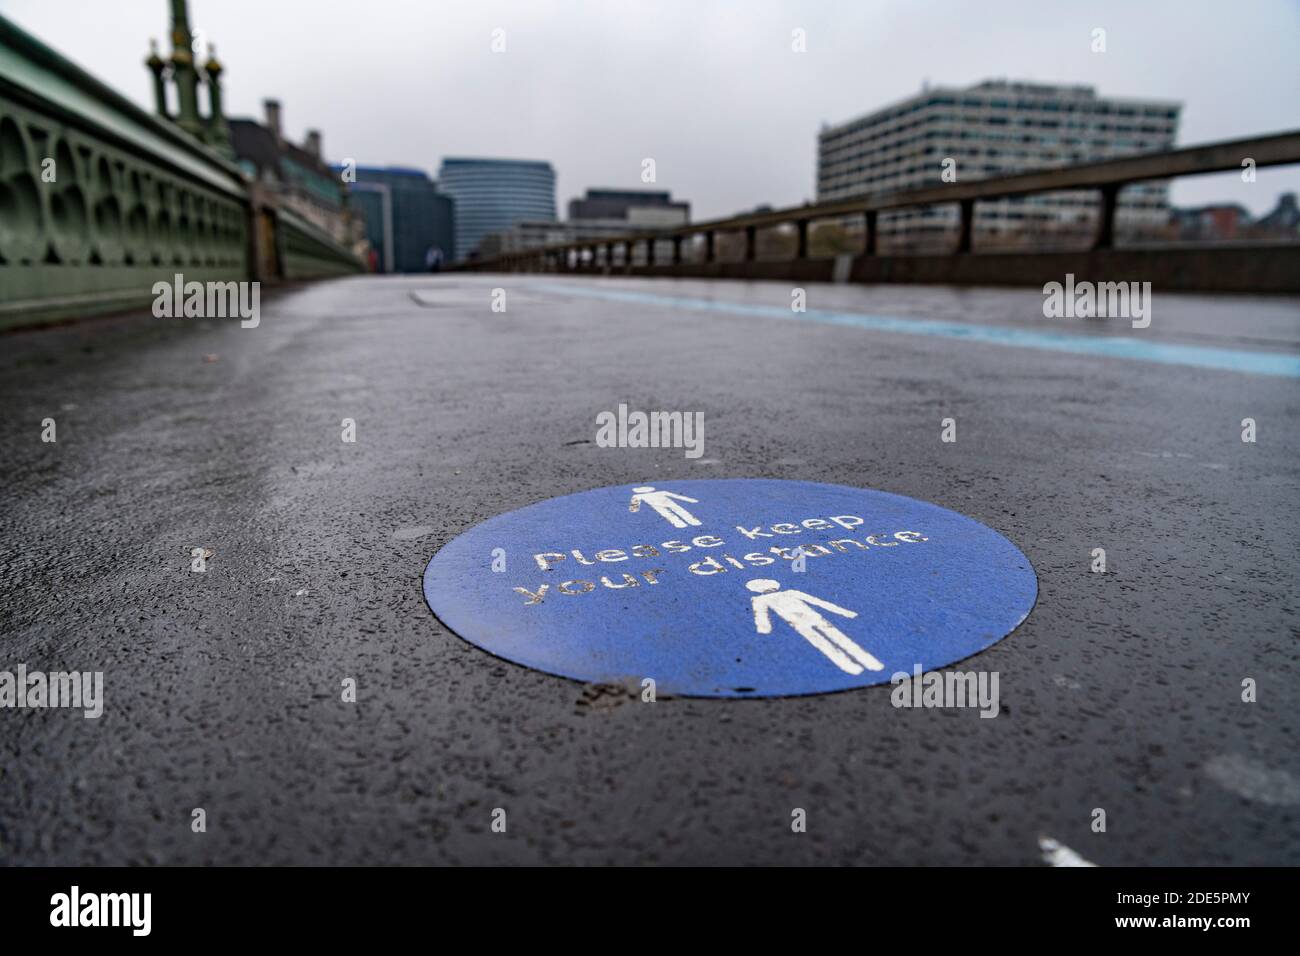 Coronavirus Covid-19 Lockdown Informationen Zeichen auf dem Bürgersteig zu halten soziale Distanz, für soziale Distanzierung in London mit leeren Straßen und ruhigen verlassenen Straßen an Westminster Bridge, England, Großbritannien Stockfoto